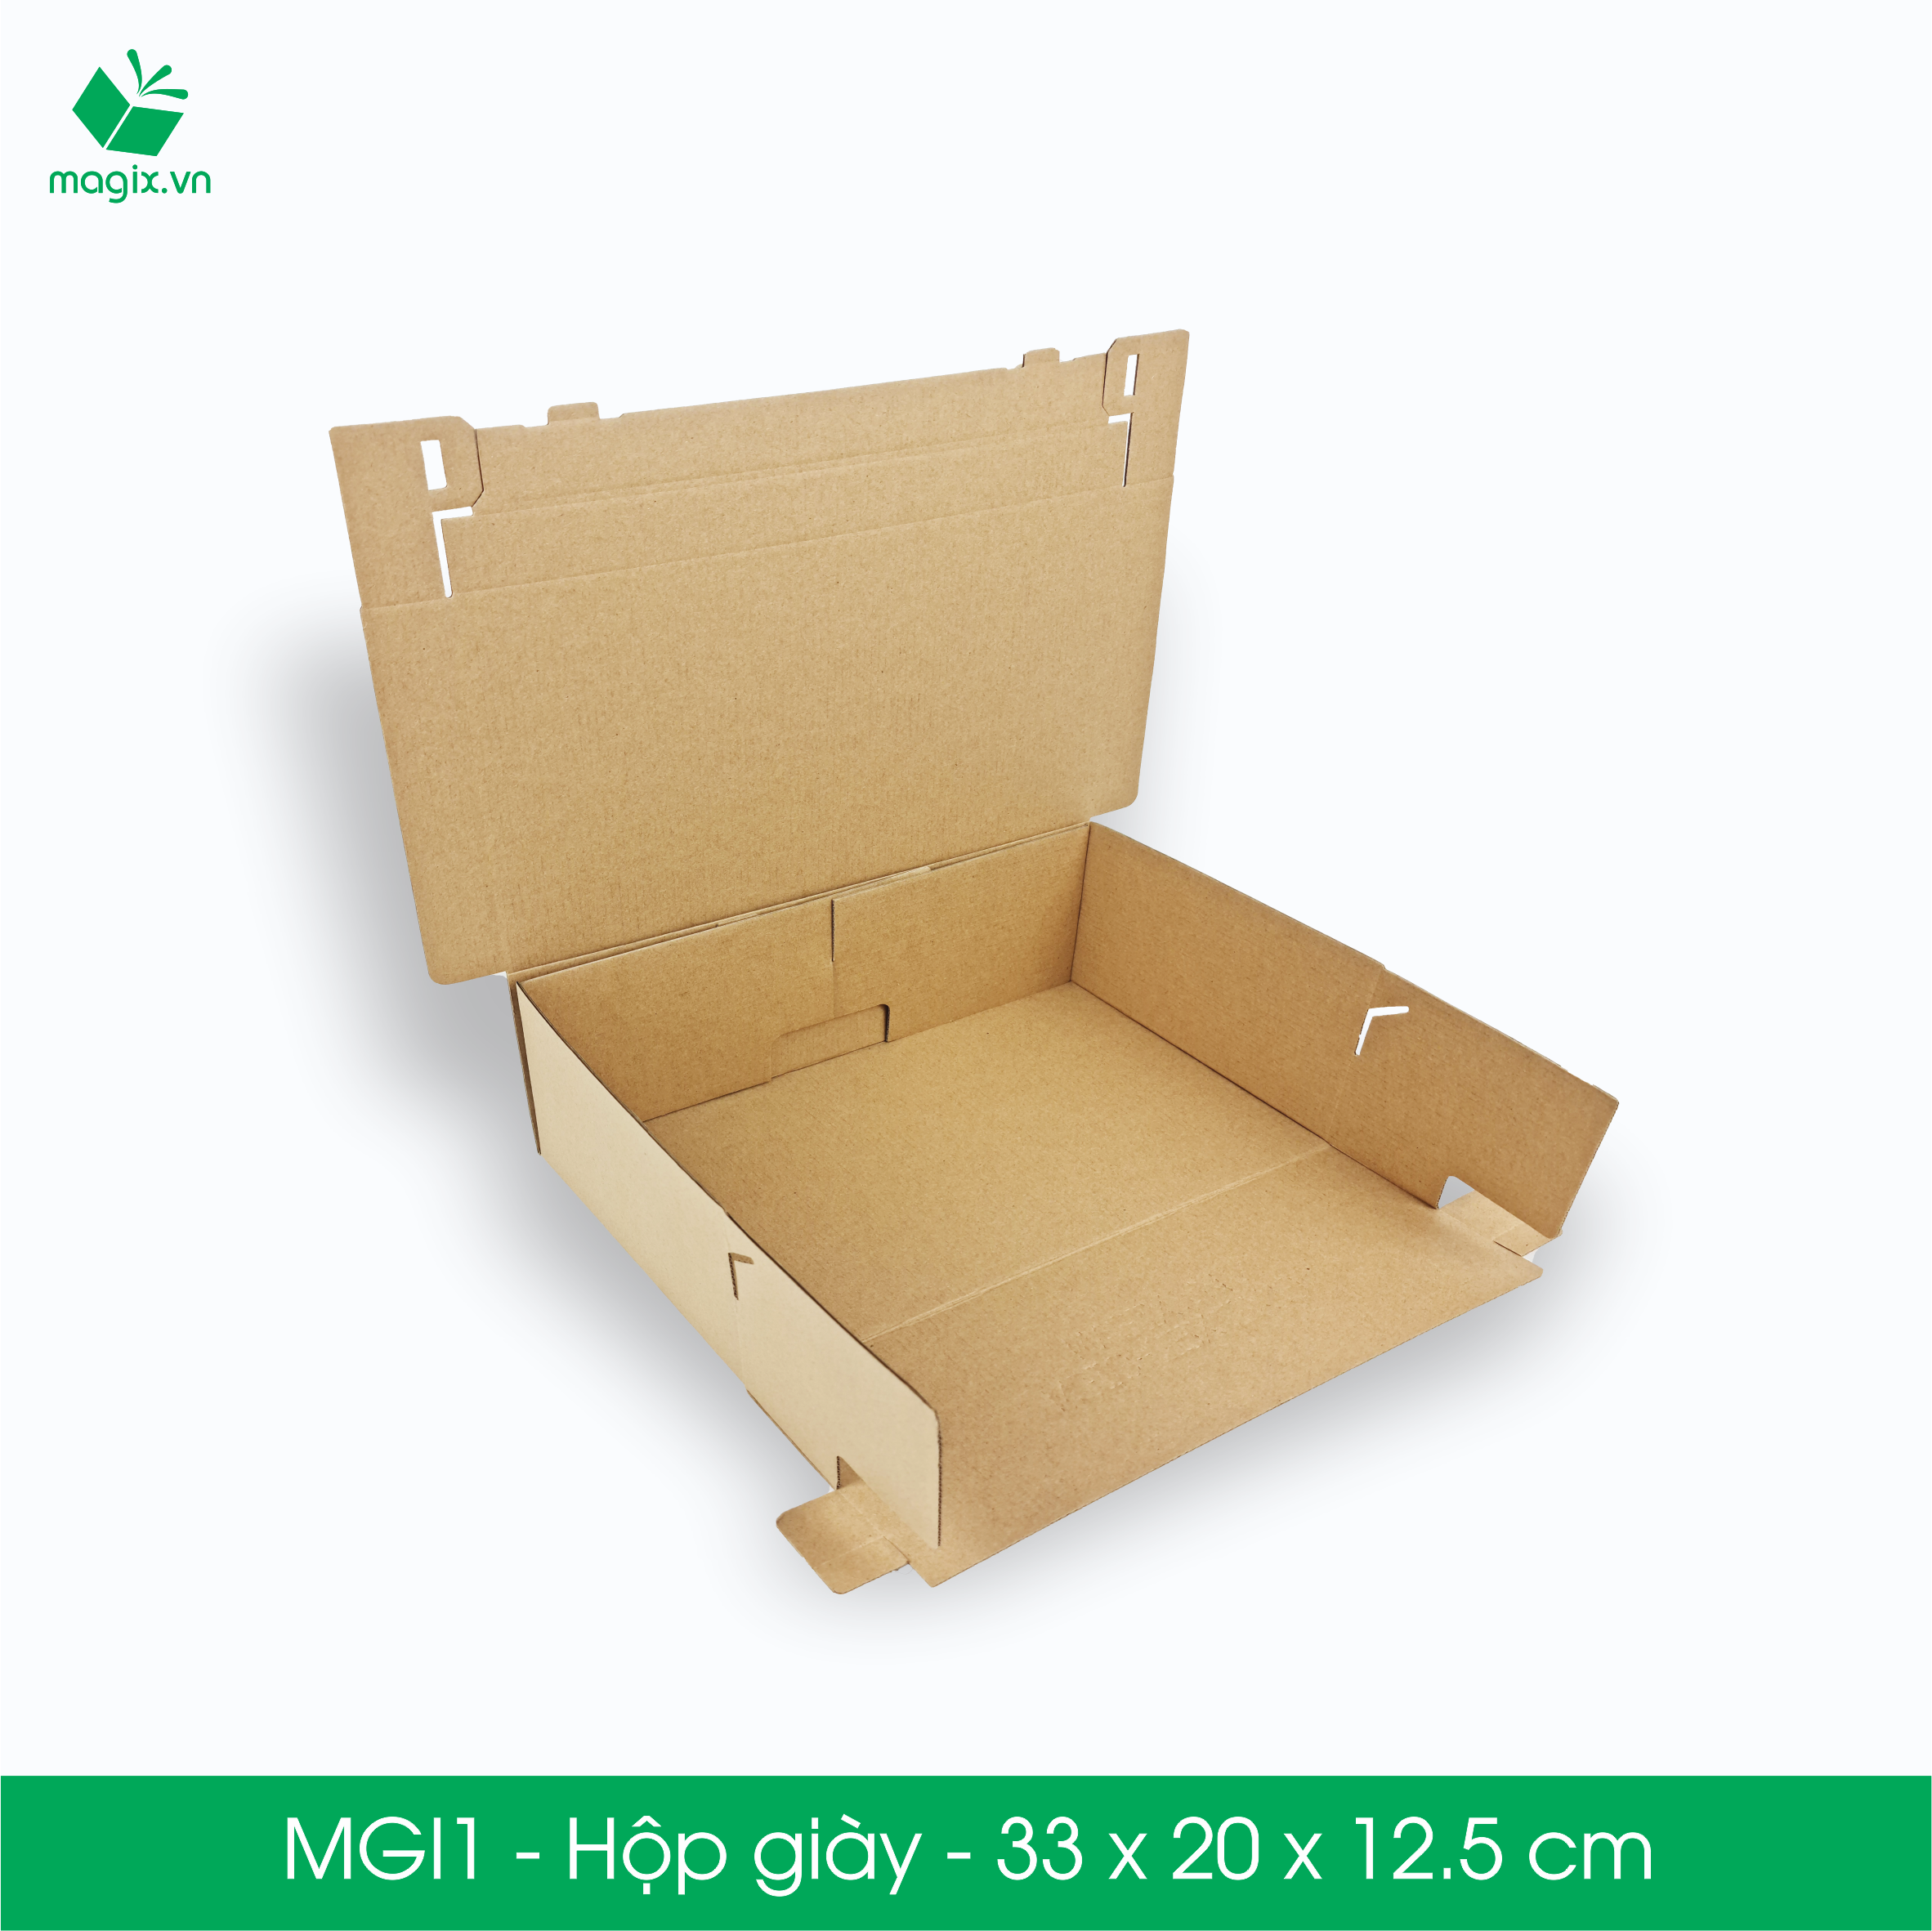 MGI1 - 33x20x12.5cm - 50 Hộp giày - Thùng hộp carton trơn đóng hàng